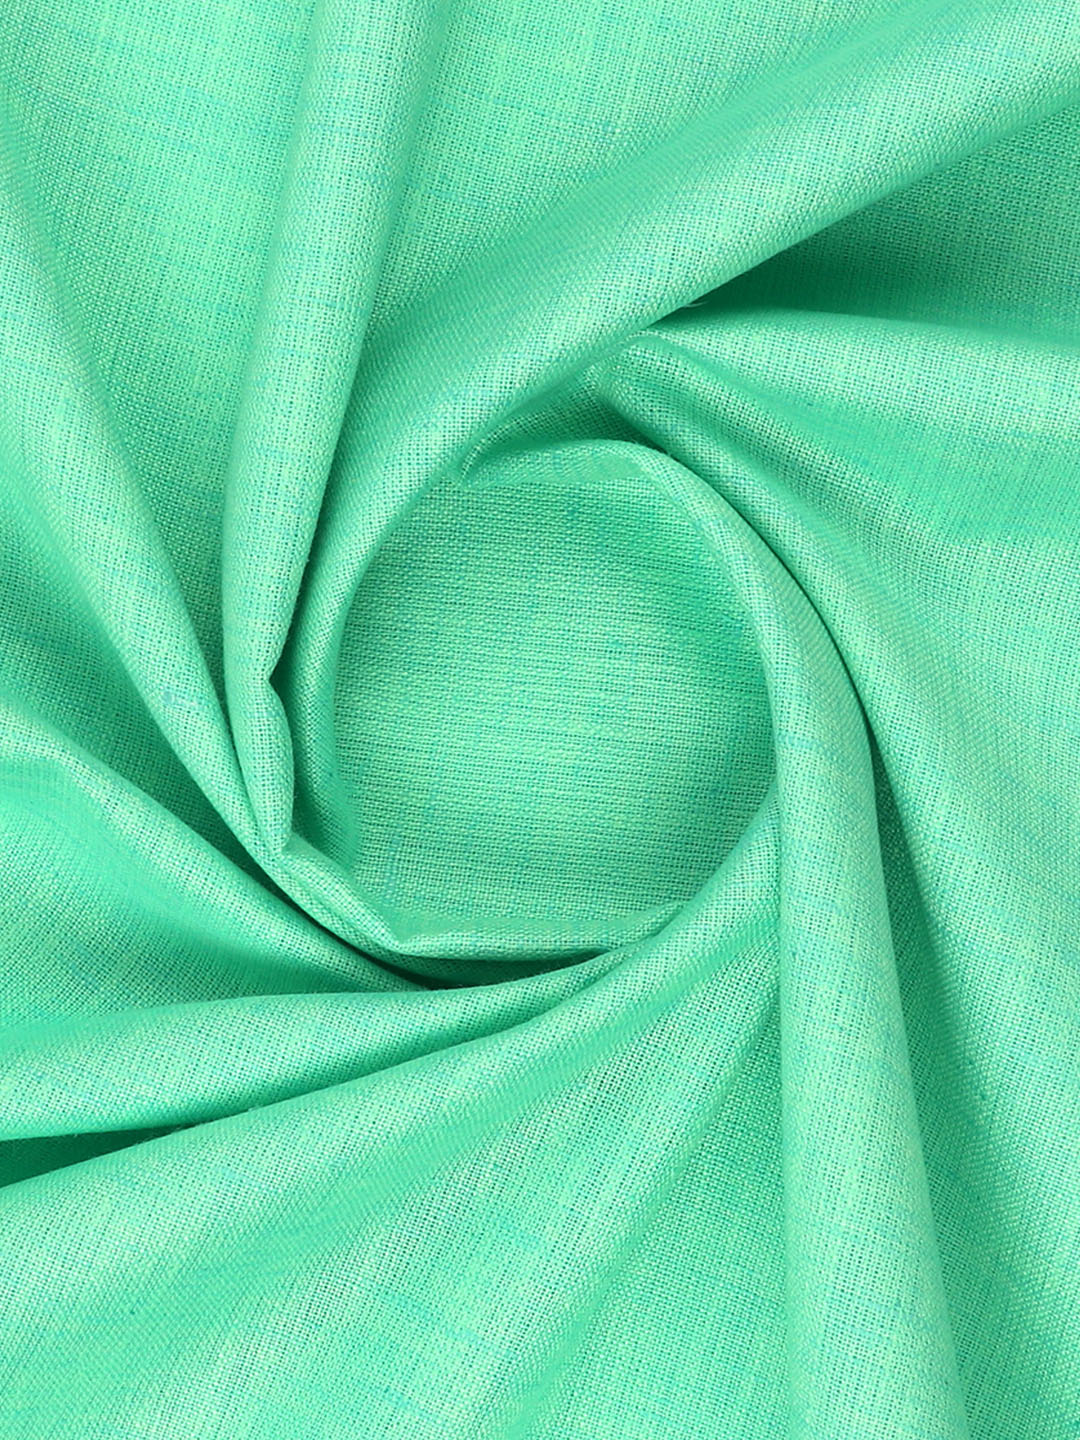 Cotton Blend Lite Green Colour Kurtha Fabric Lampus